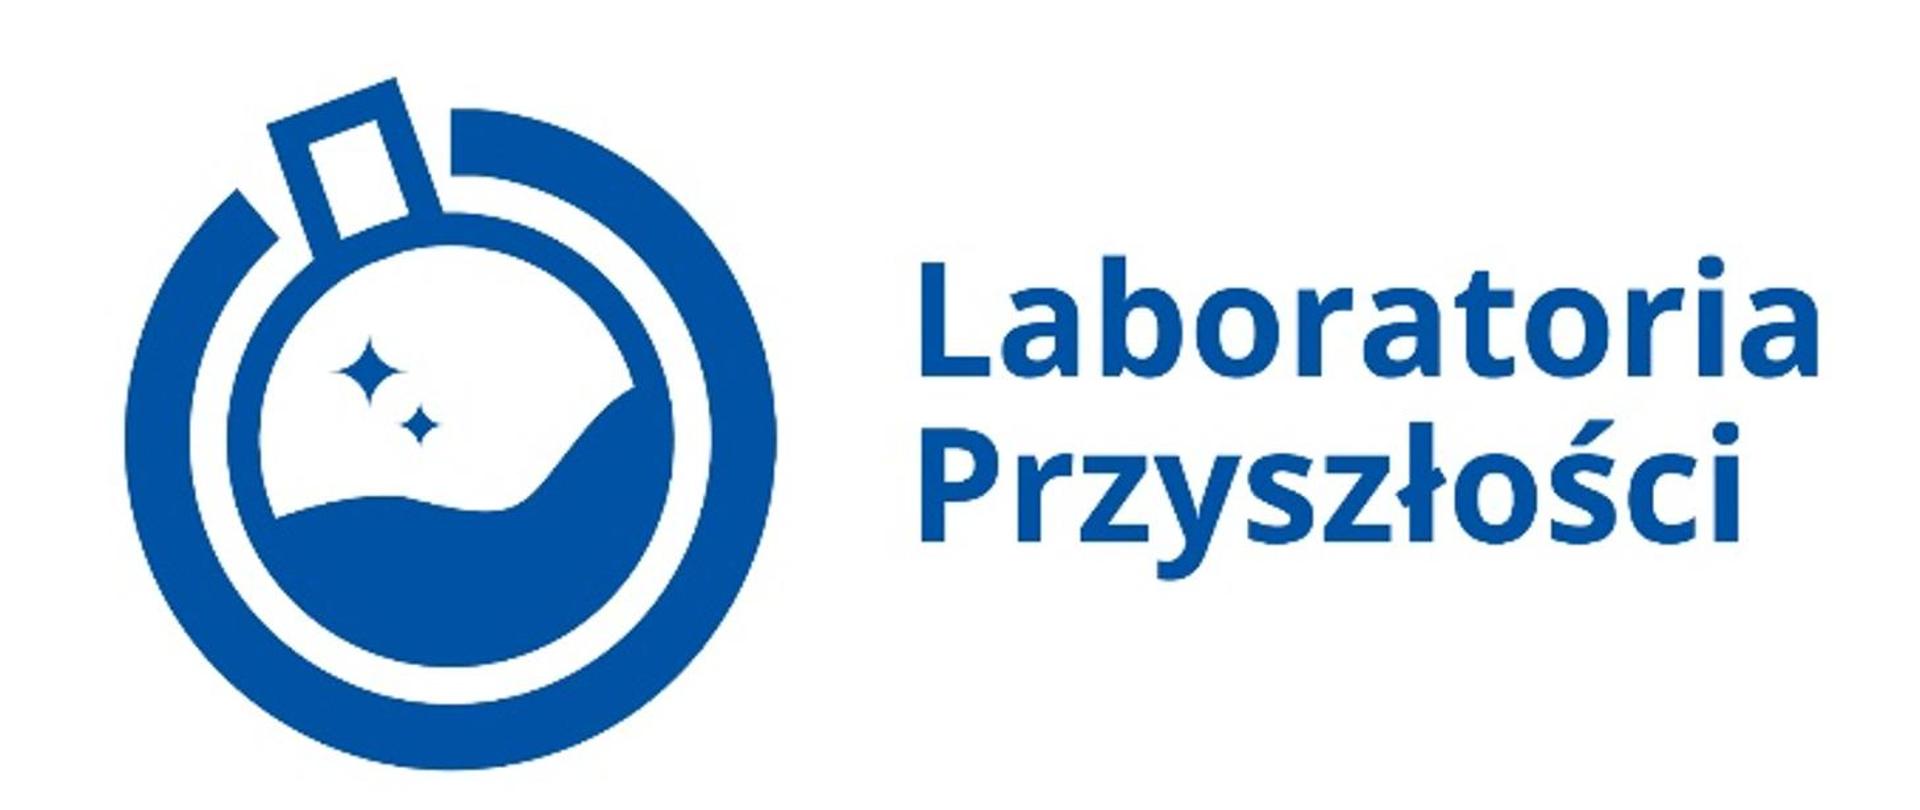 Laboratoria Przyszłości logo